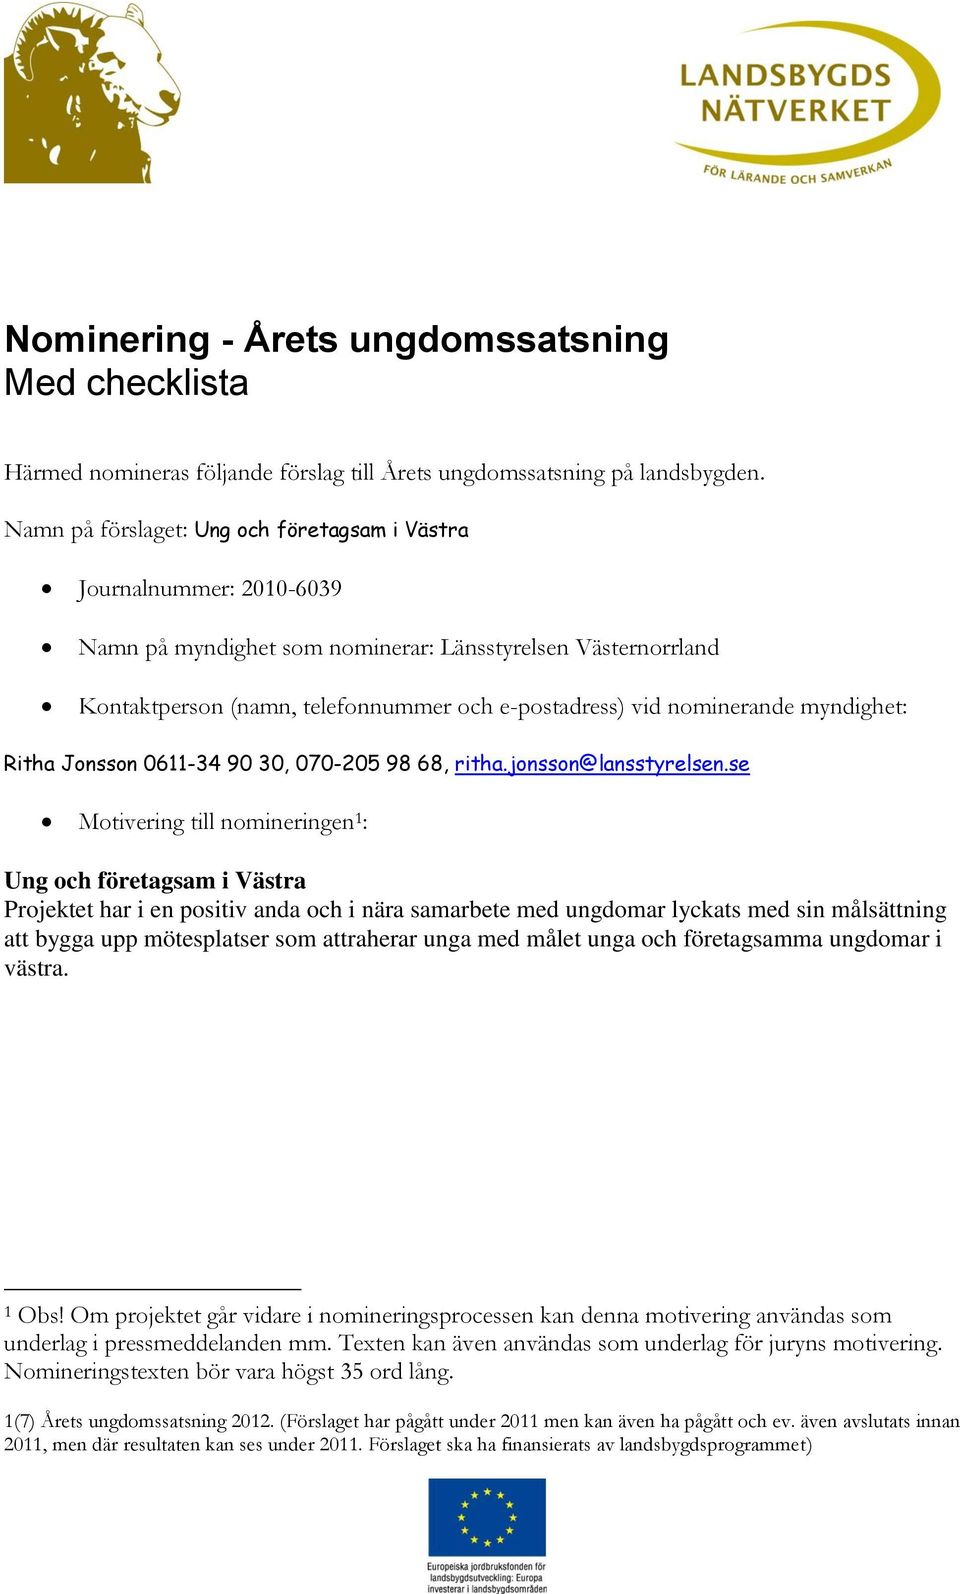 nominerande myndighet: Ritha Jonsson 0611-34 90 30, 070-205 98 68, ritha.jonsson@lansstyrelsen.